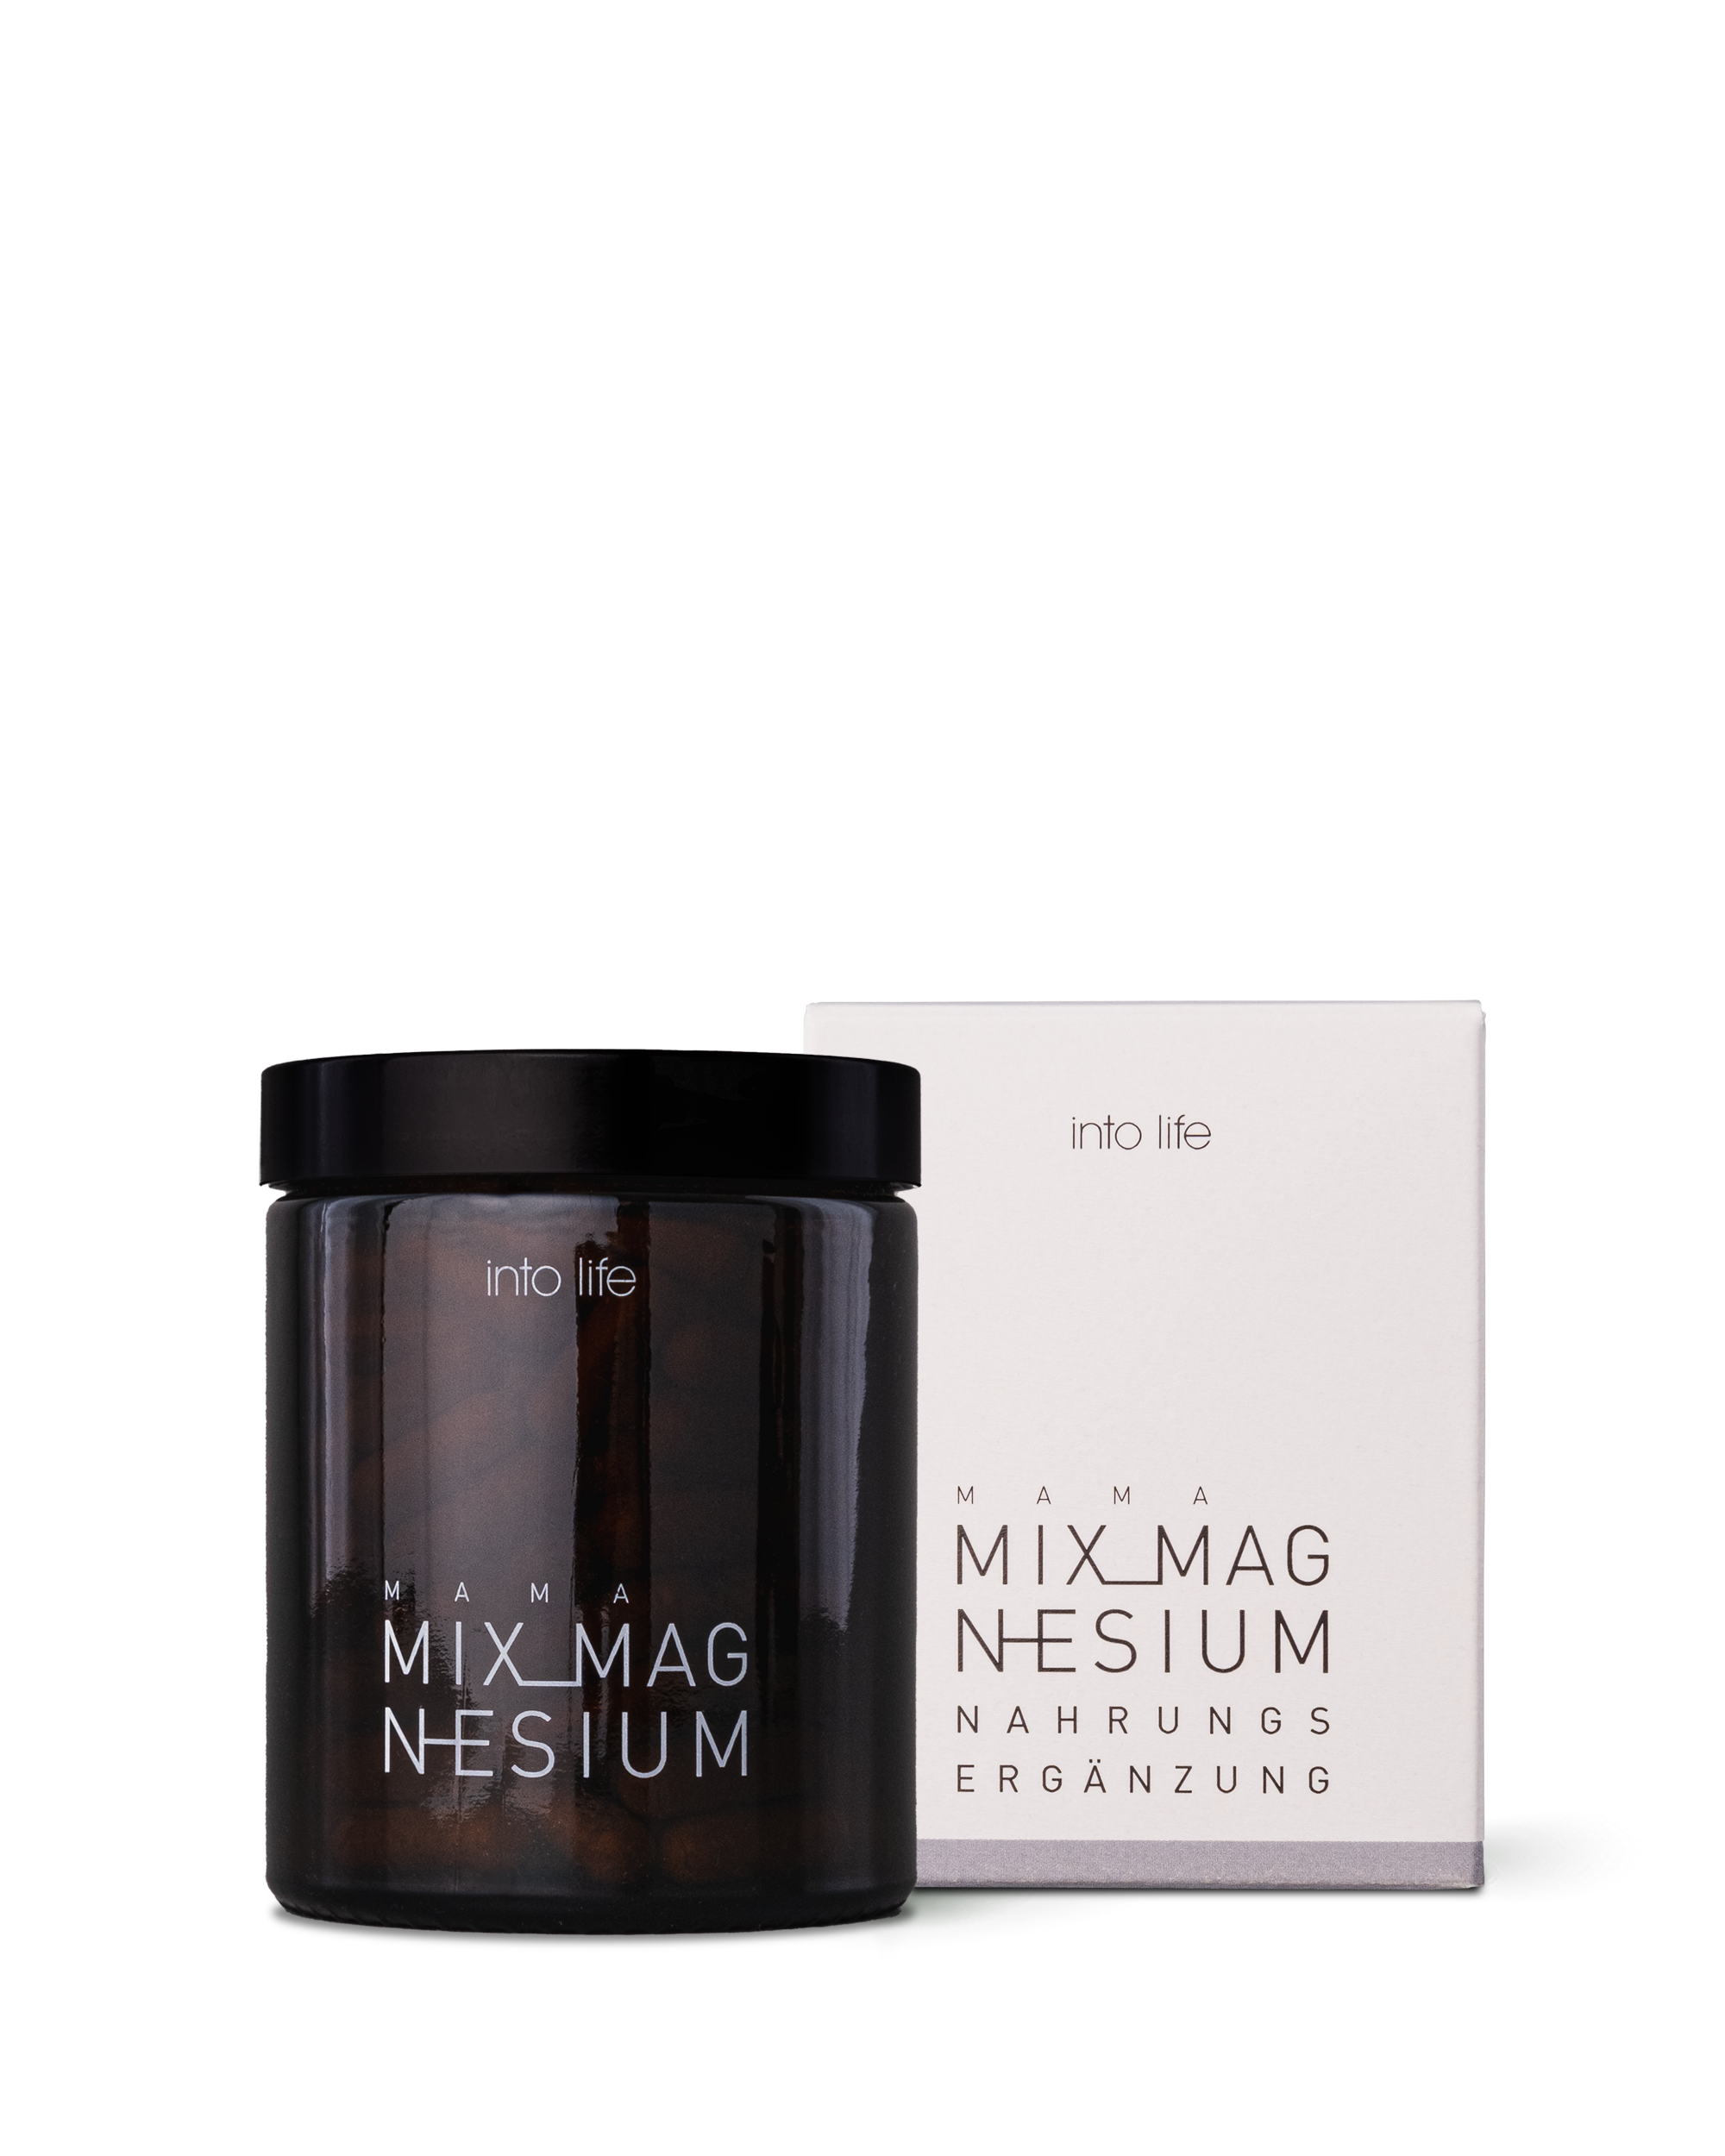 Mix Magnesium